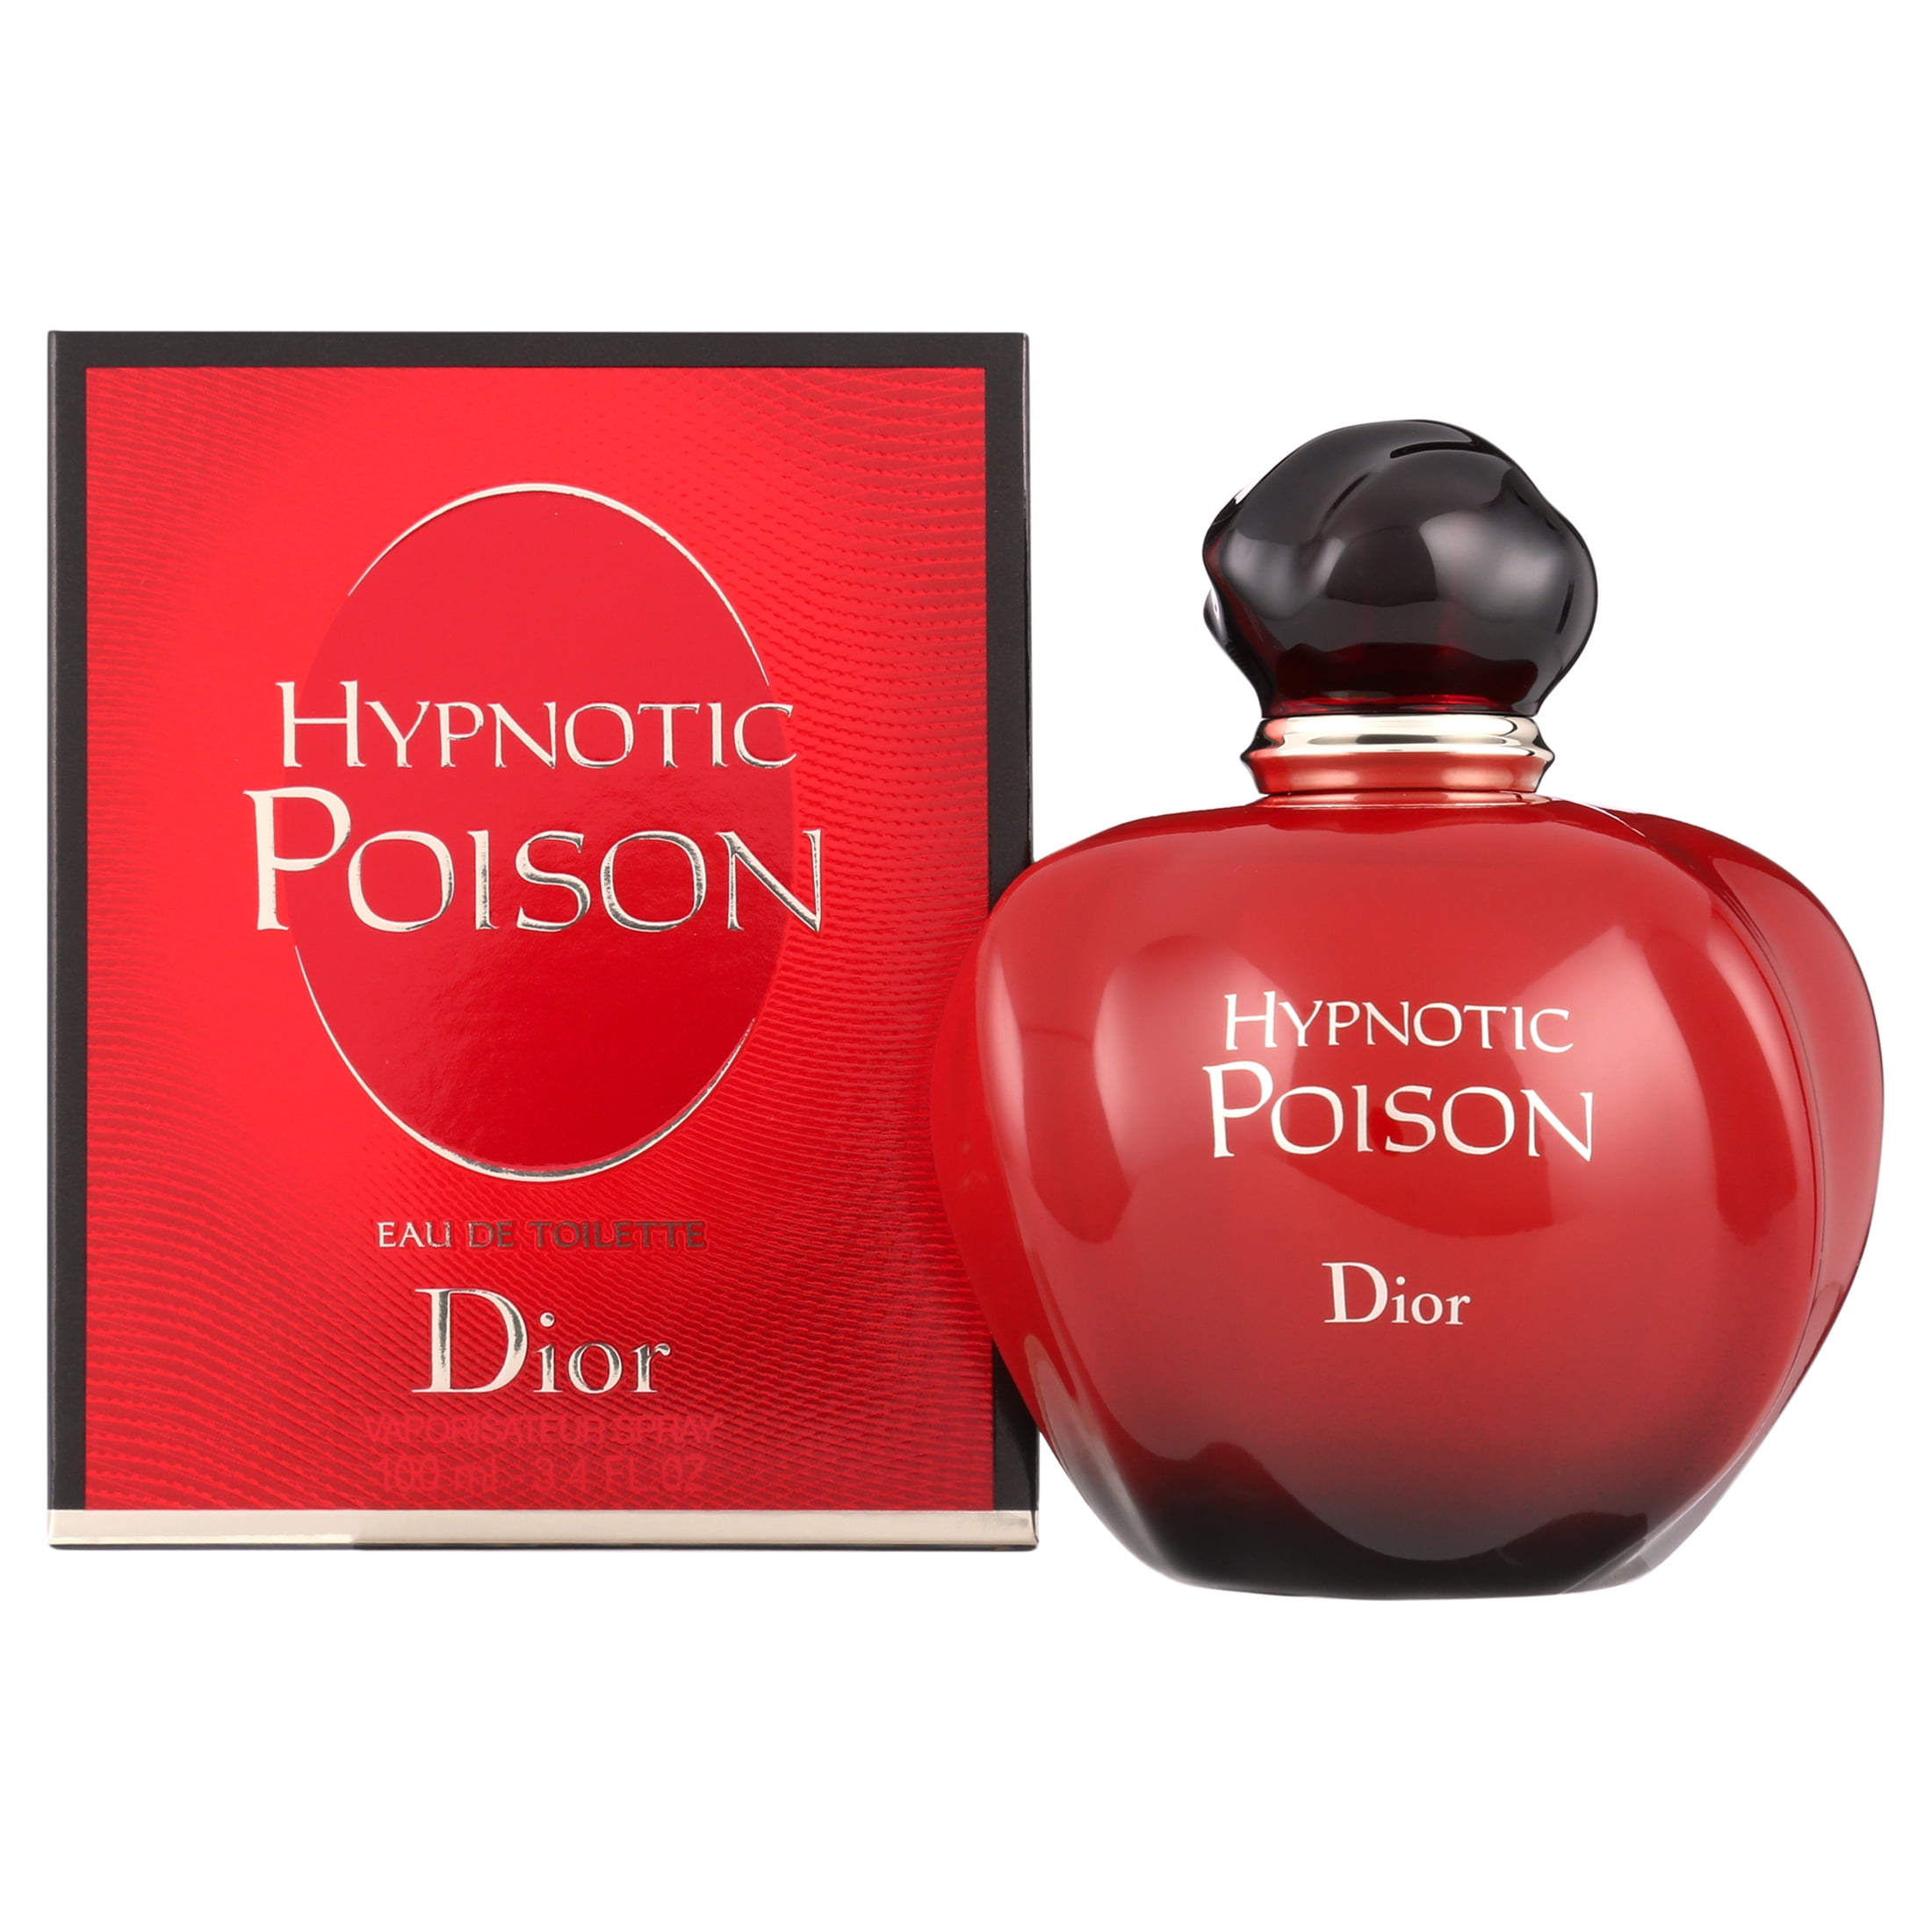  Christian Dior Eau de Toilette Spray, Hypnotic Poison Eau  Secrete, 3.4 Ounce. : Hypnotic Poison Perfume : Beauty & Personal Care